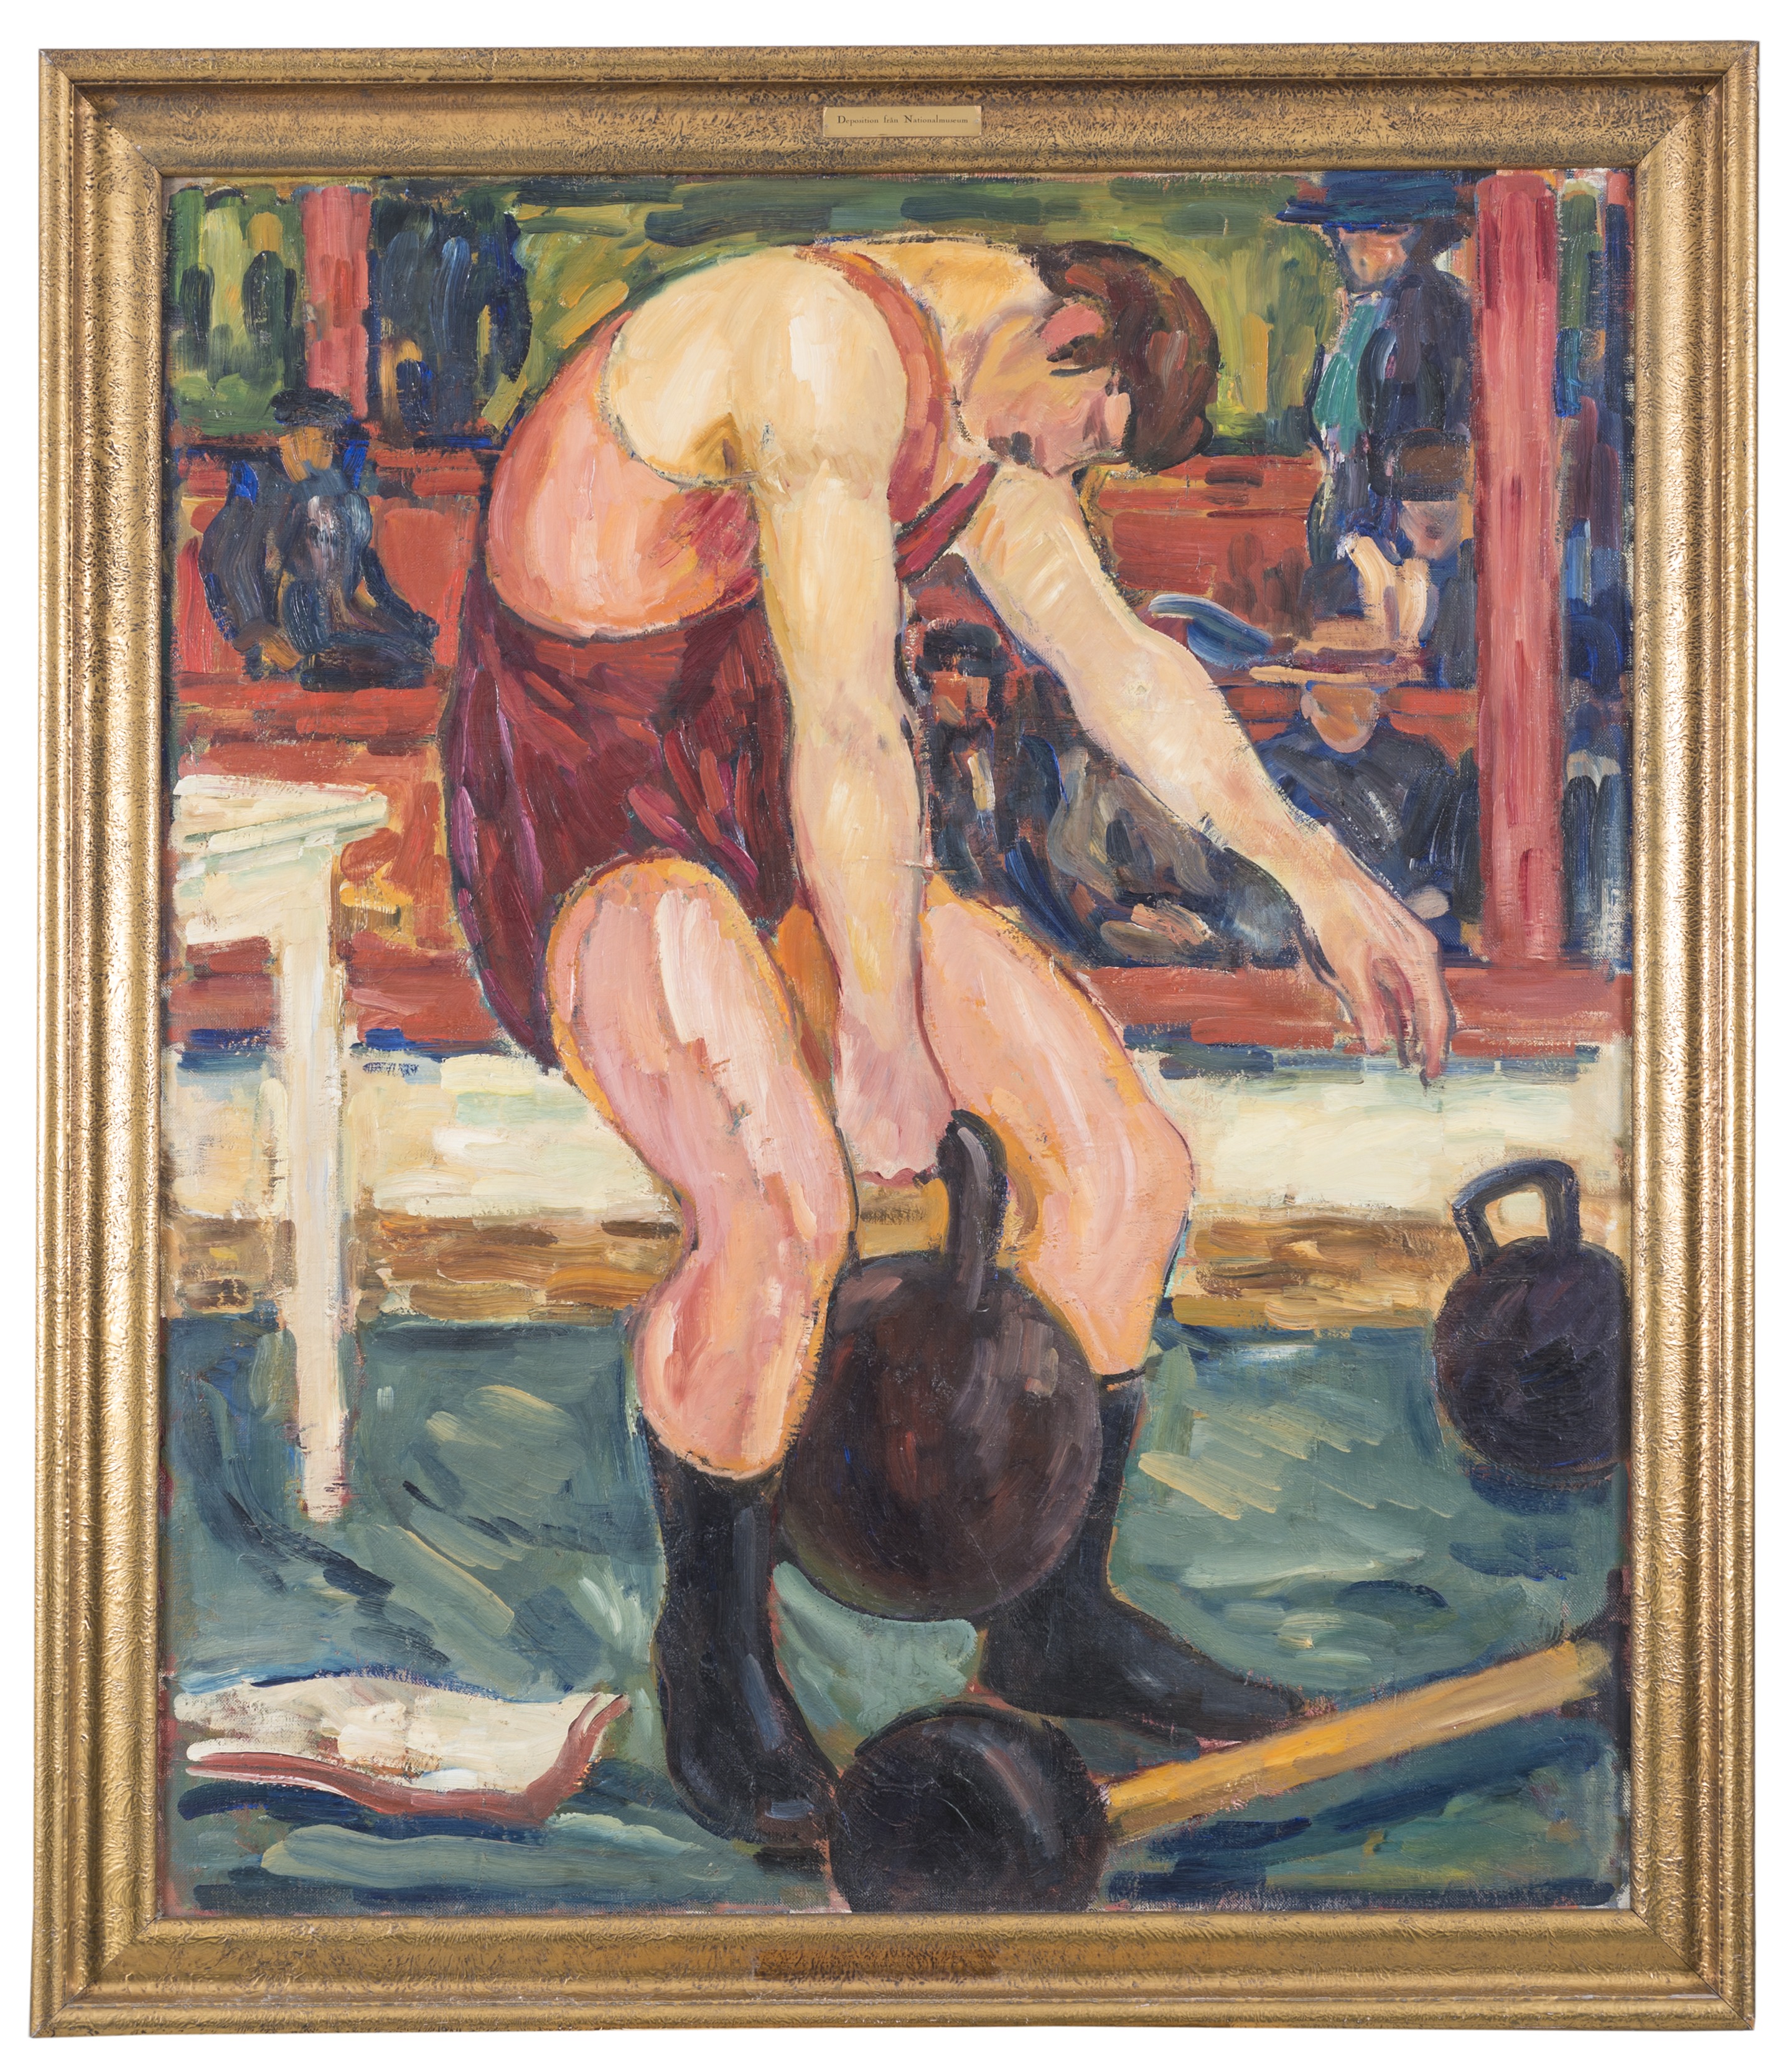 Athletes by Gösta von Hennigs - before 1941 - 141 x 119 cm Europeana